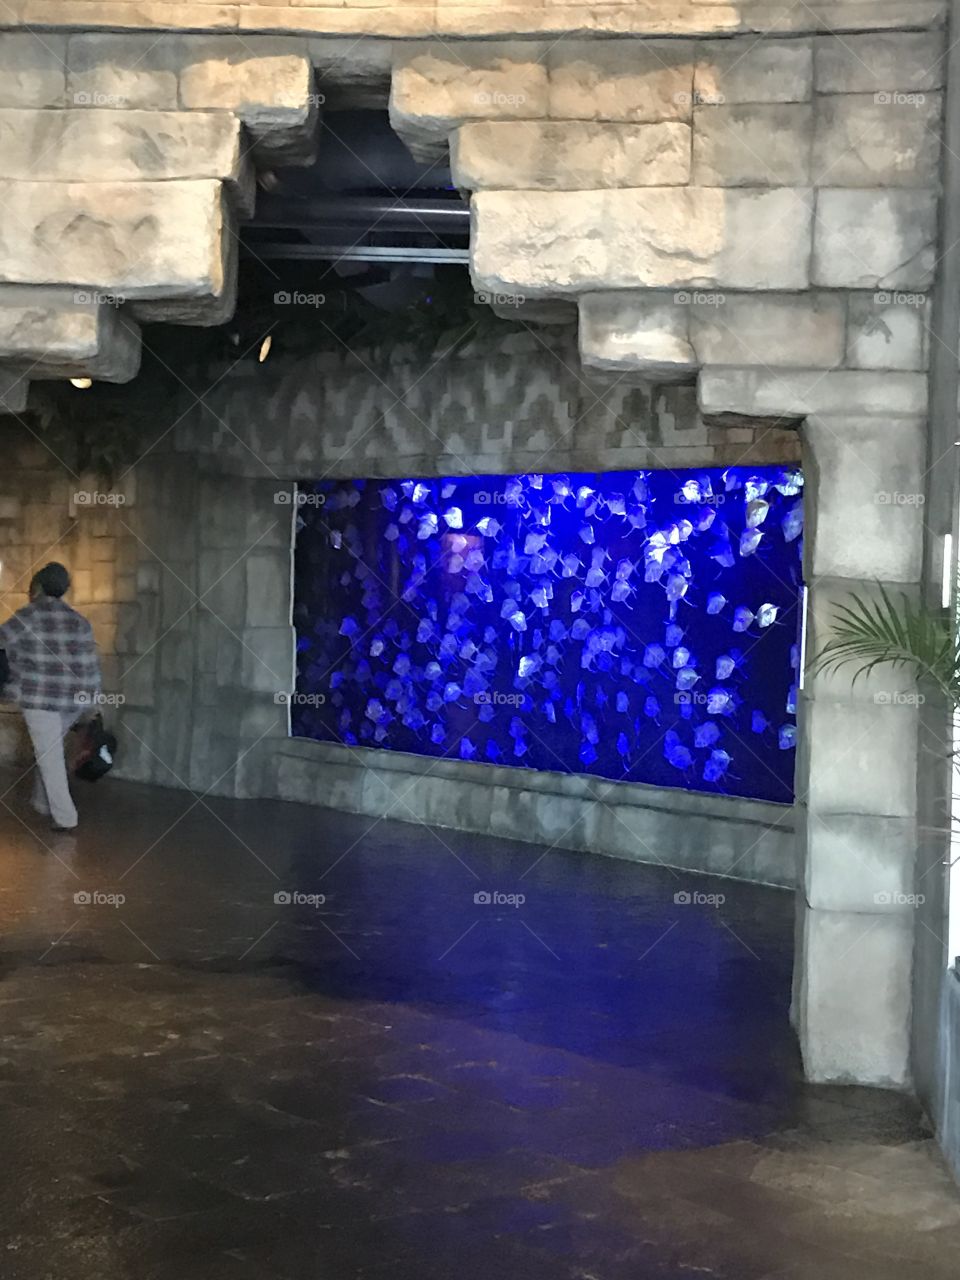 The aquarium in DC